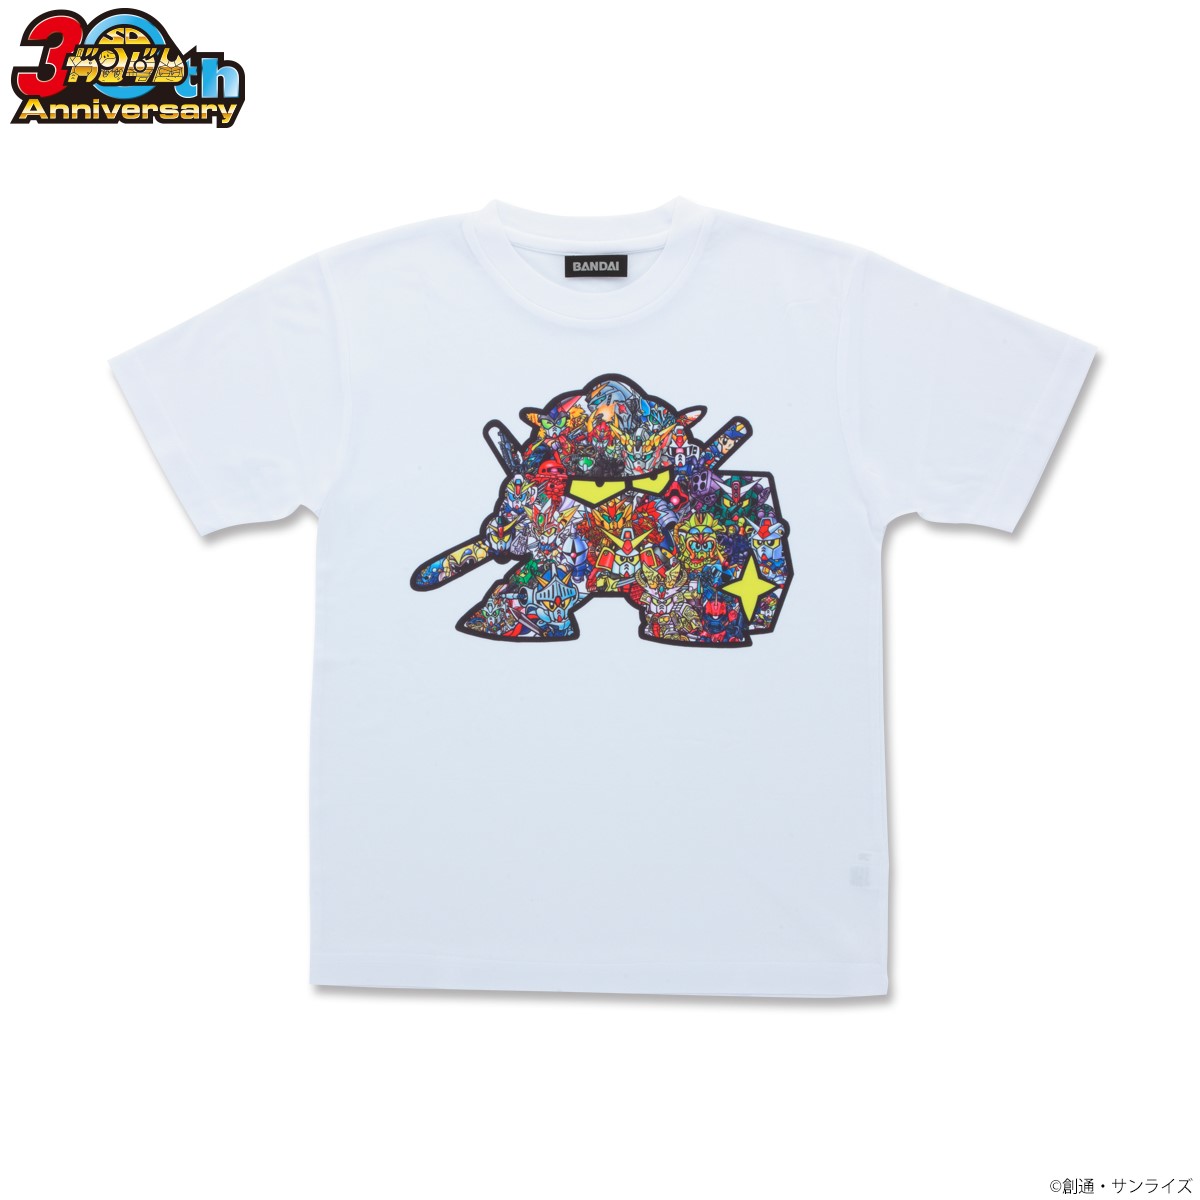 SD Gundam 30th Anniversary T-Shirt